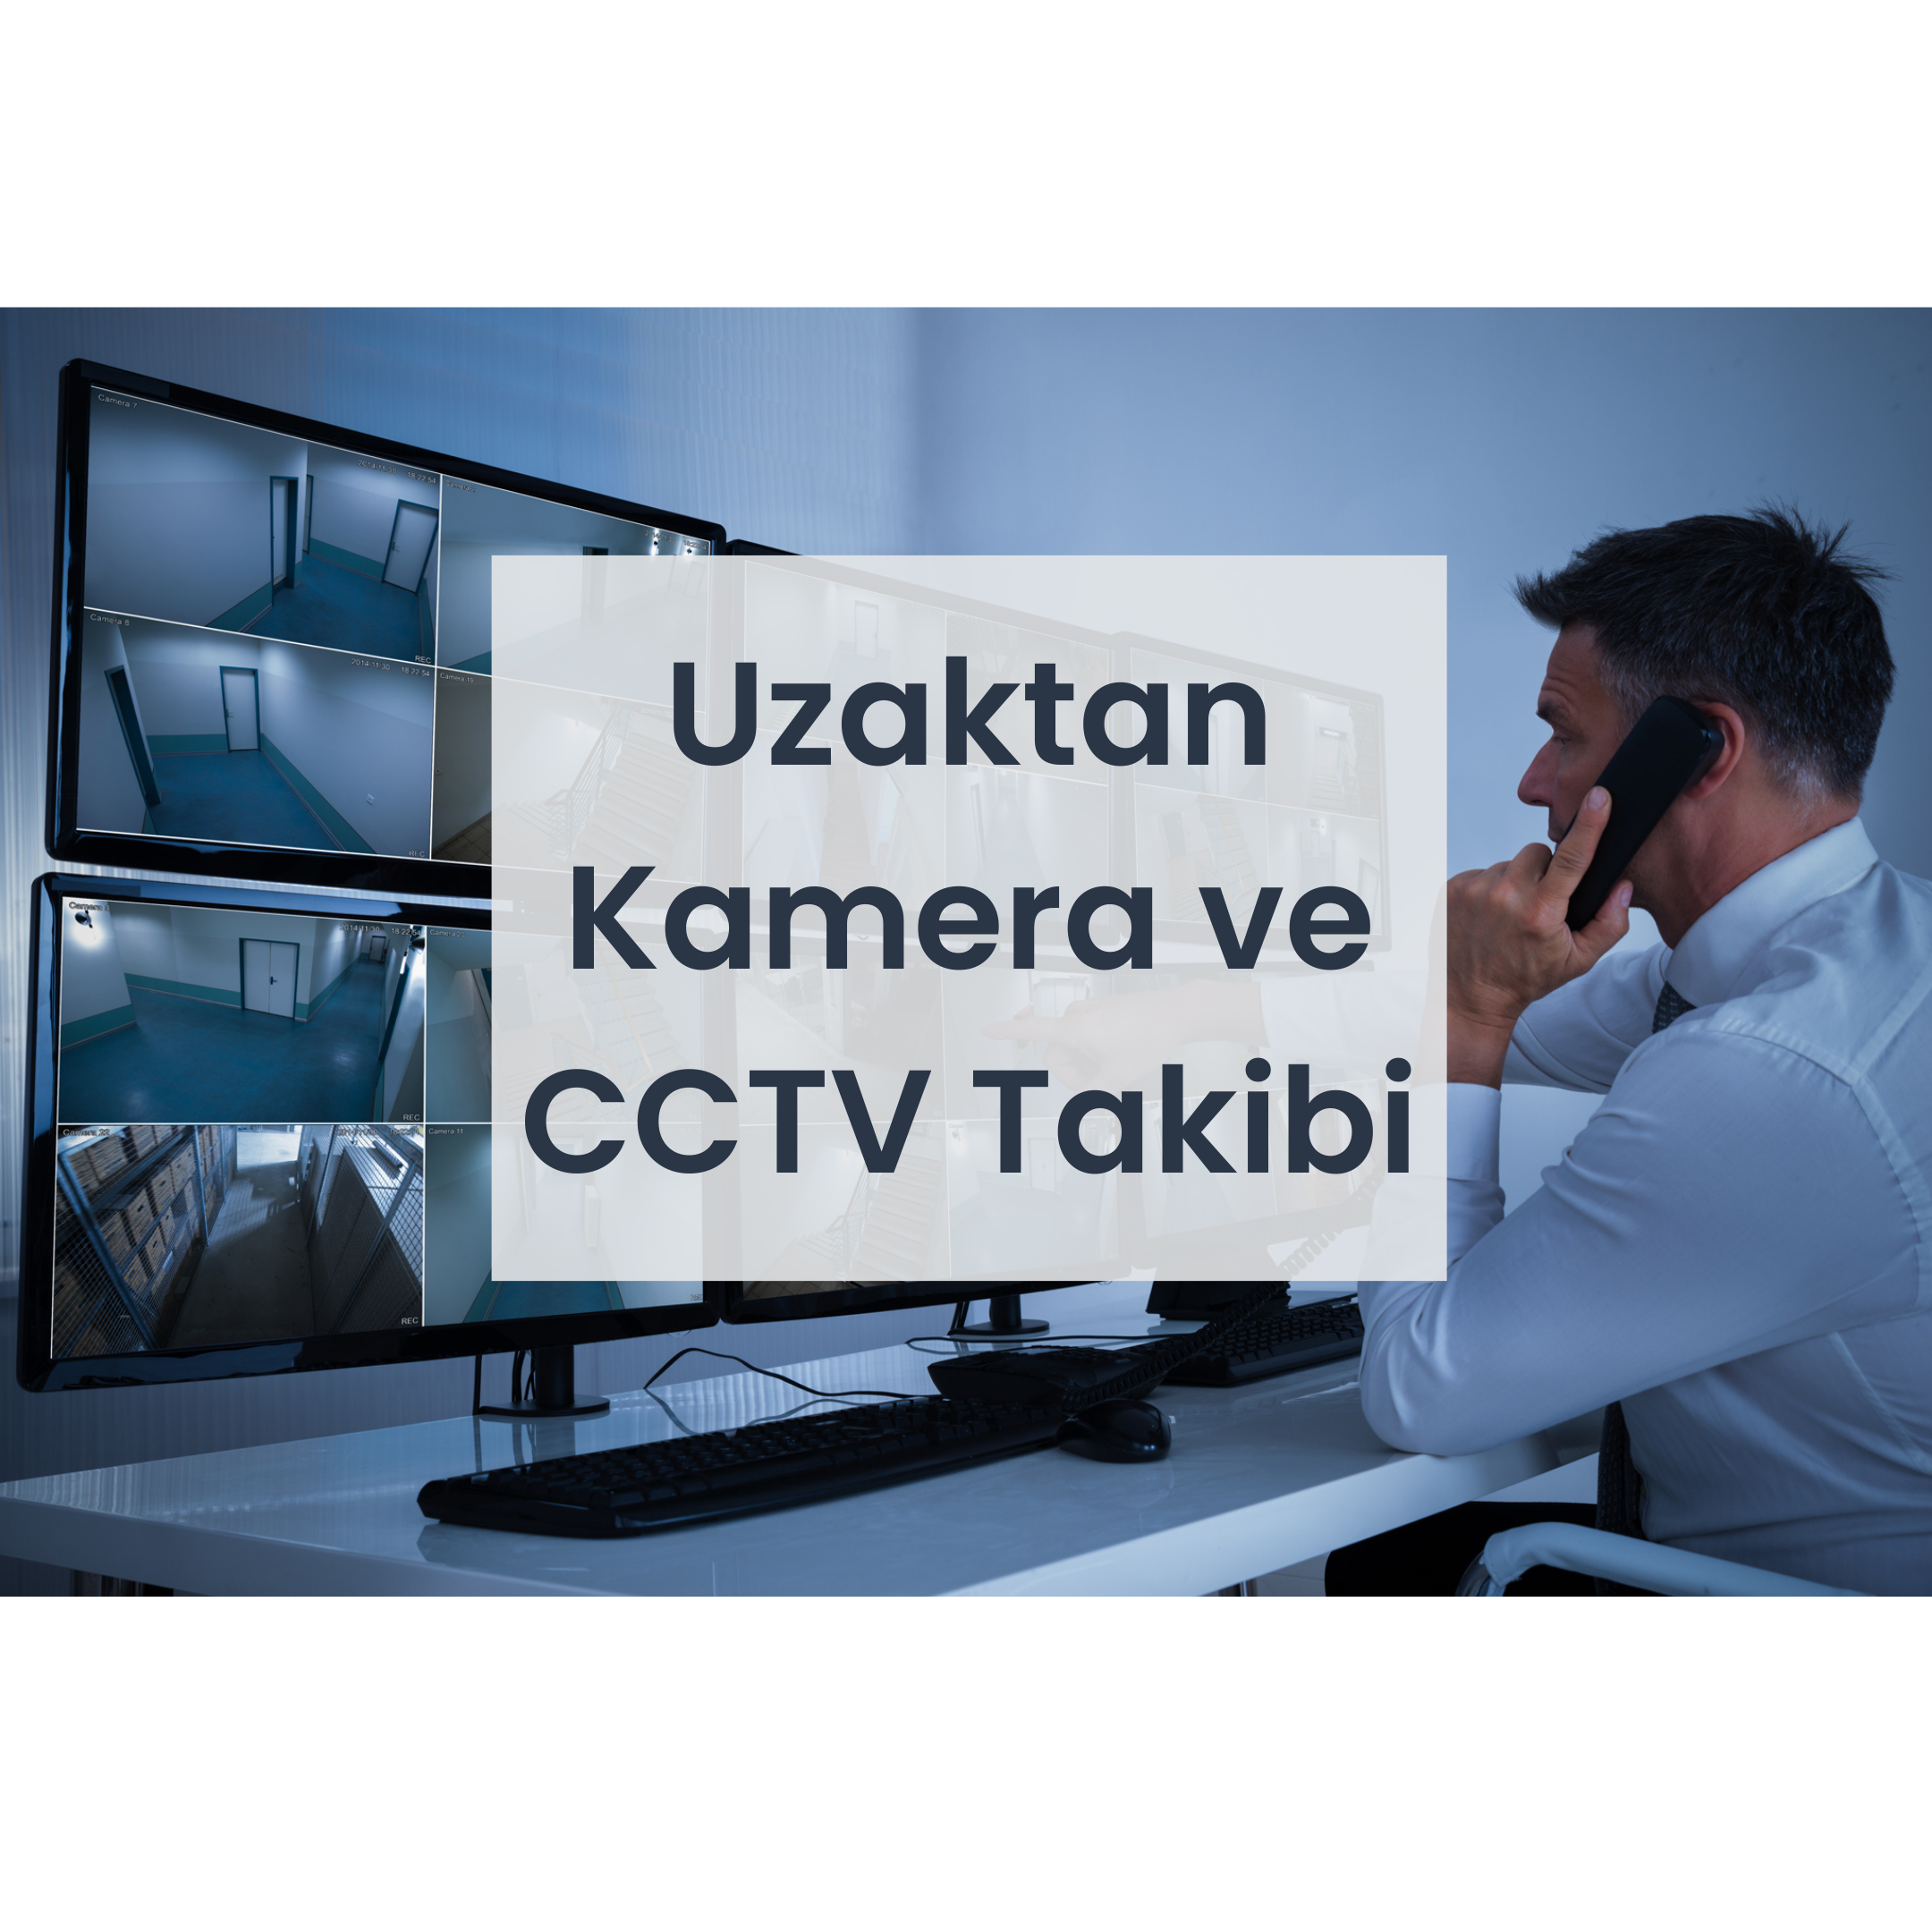 Uzaktan Kamera ve CCTV Takibi